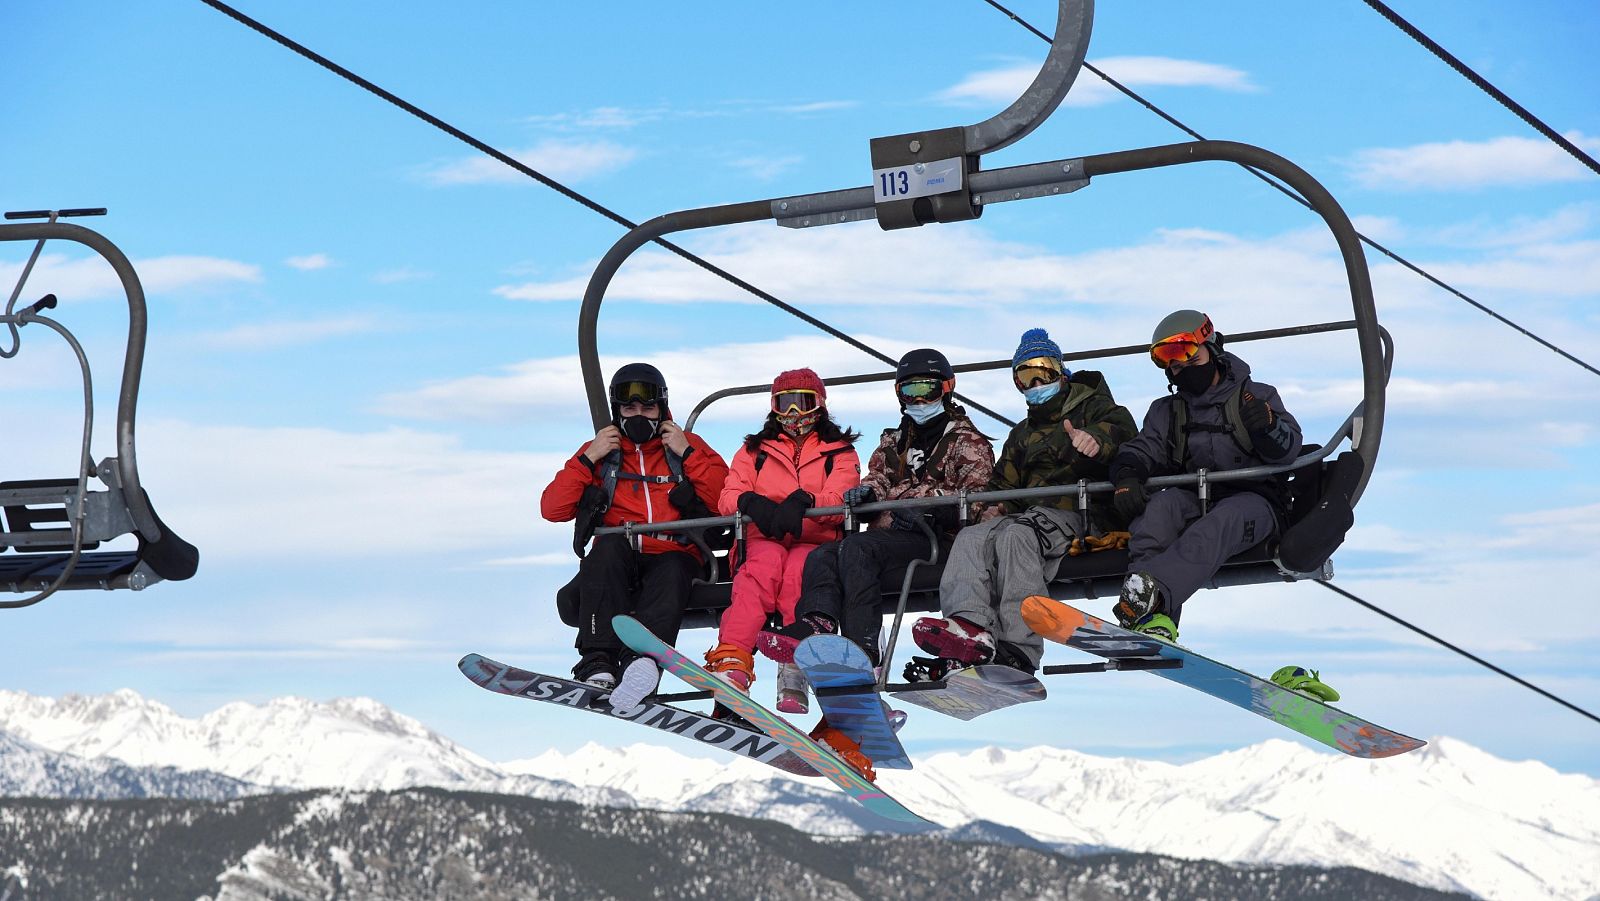 Reabren las estaciones de esquí catalanas con planes anticovid